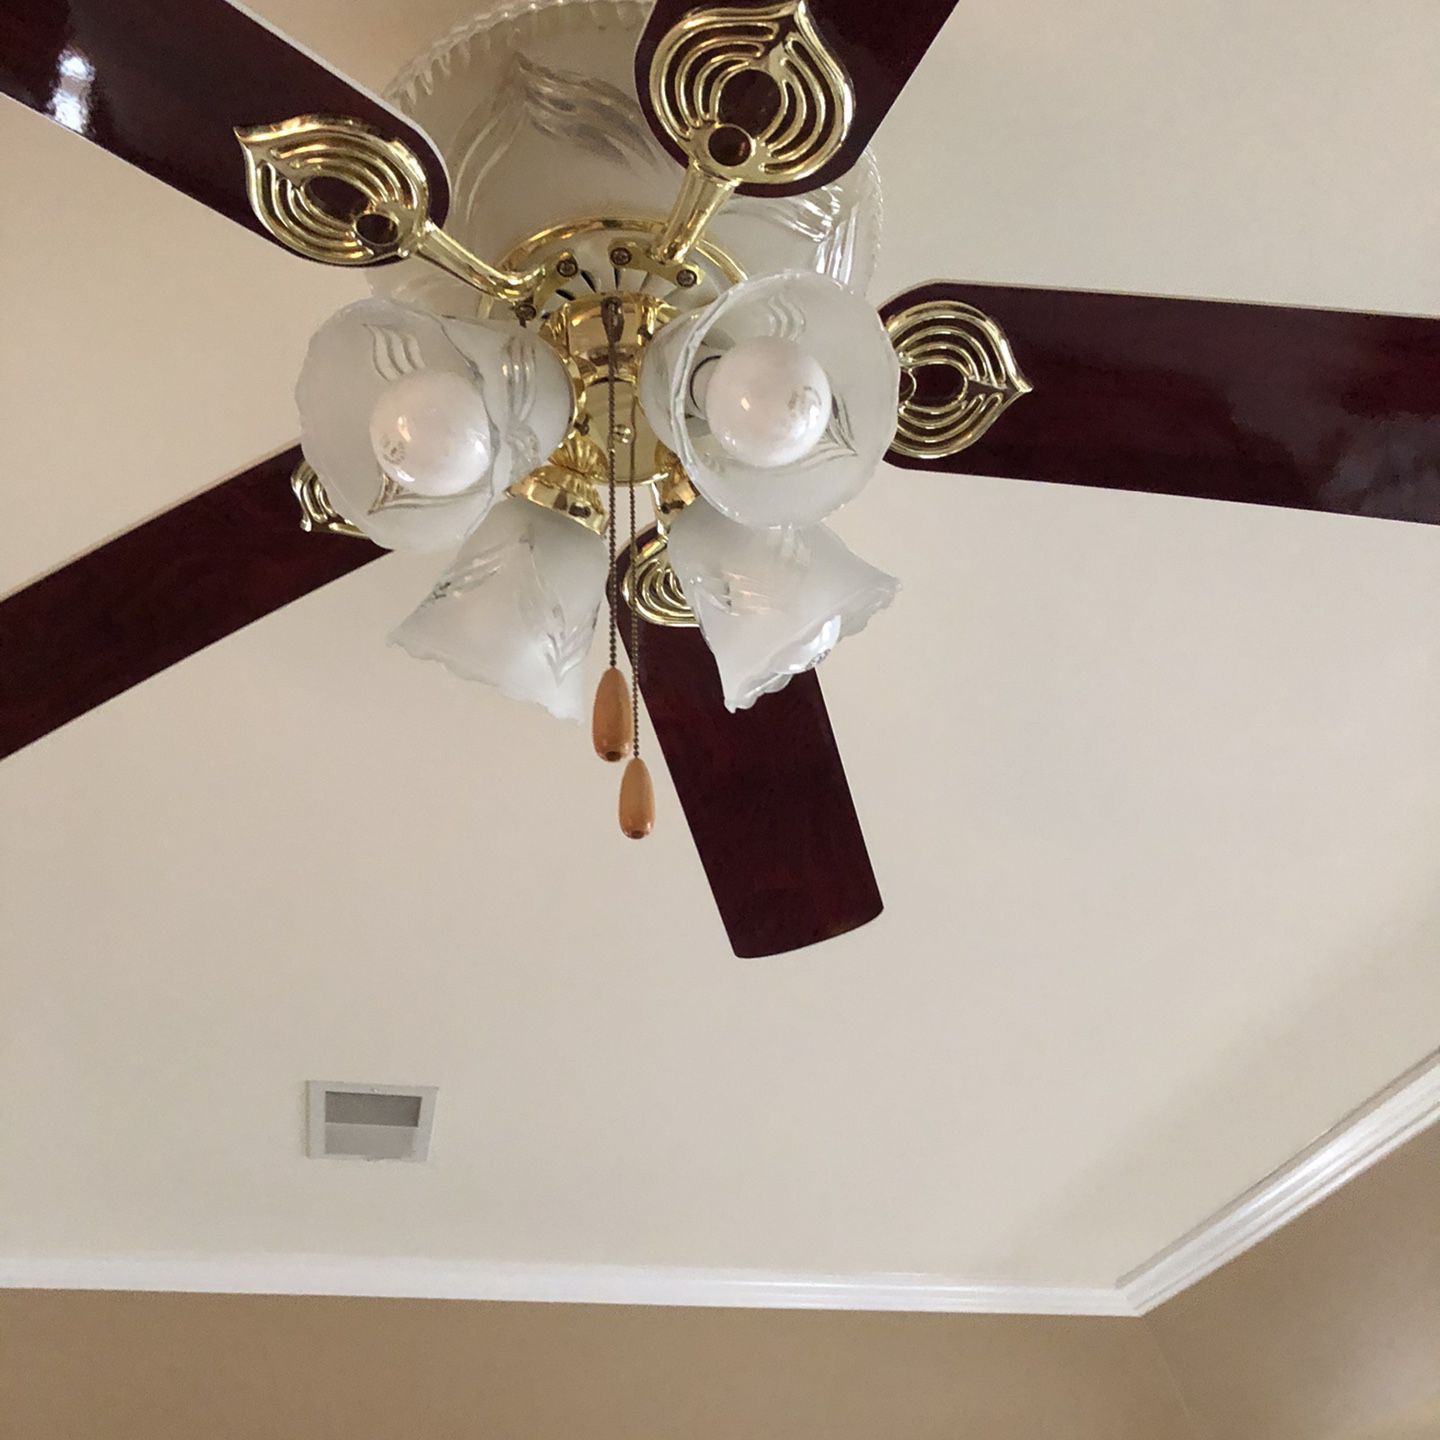 Beautiful 5 blade ceiling fan